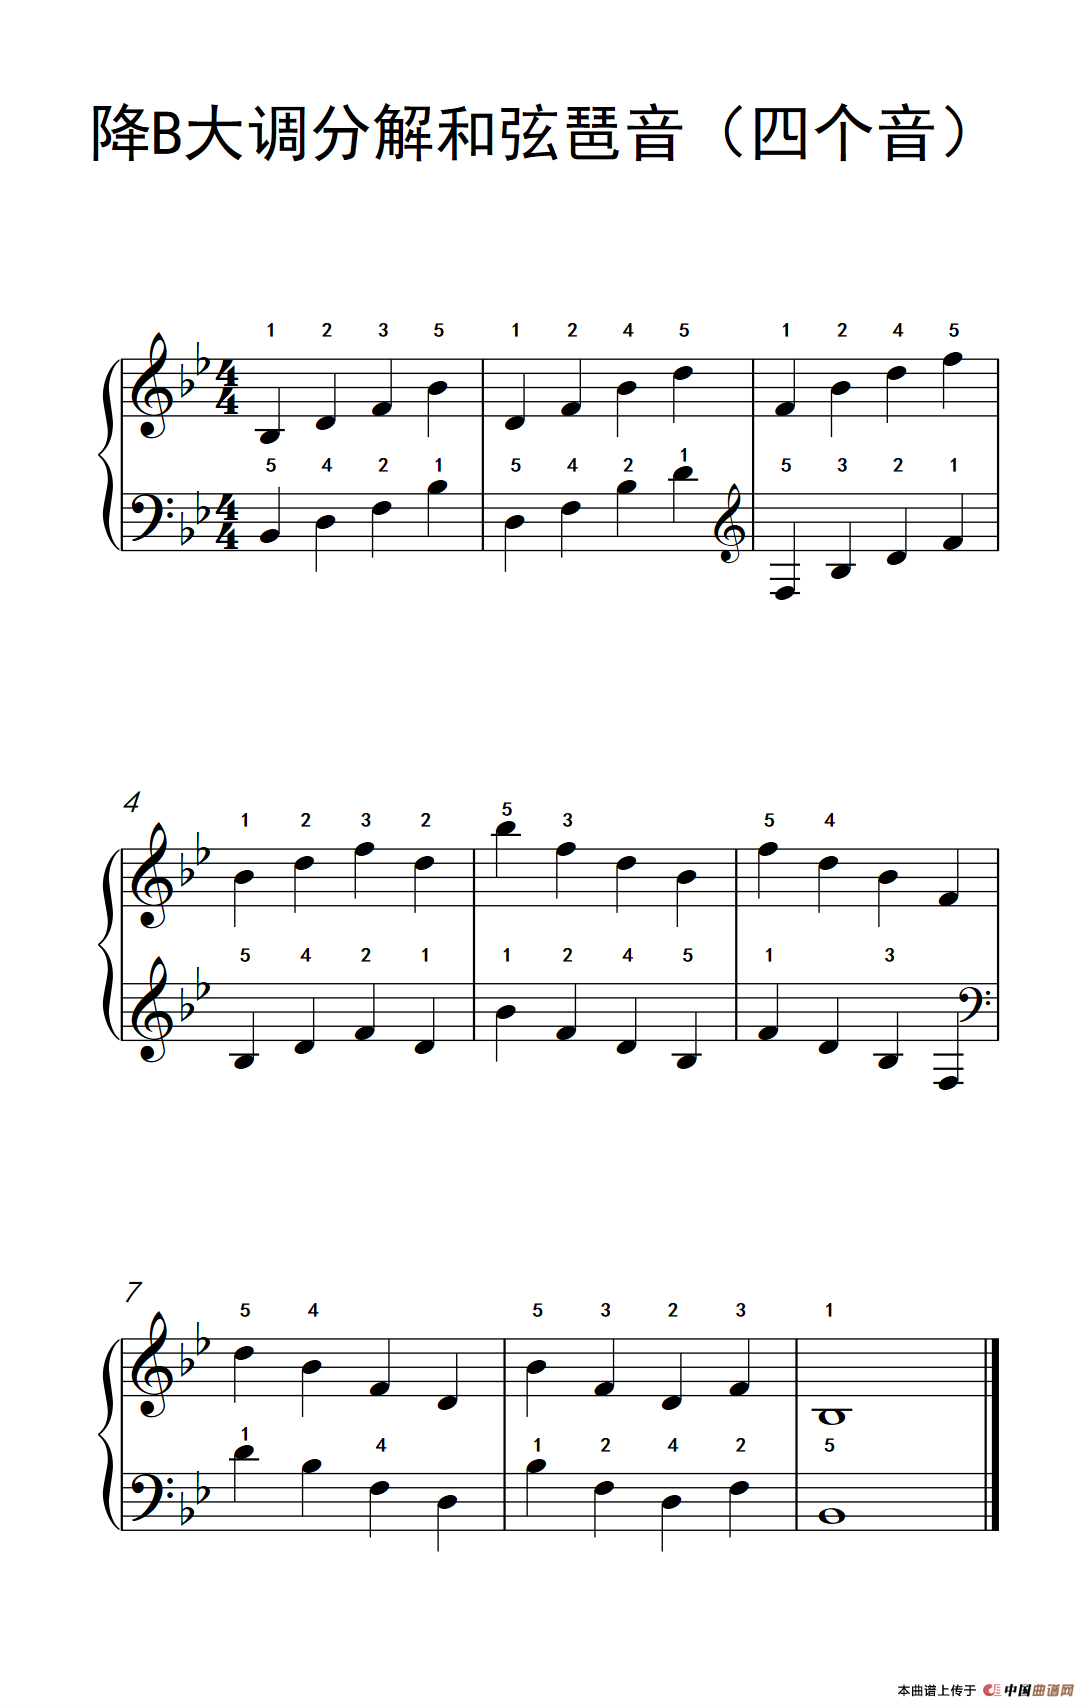 《降B大调分解和弦琶音》钢琴曲谱图分享